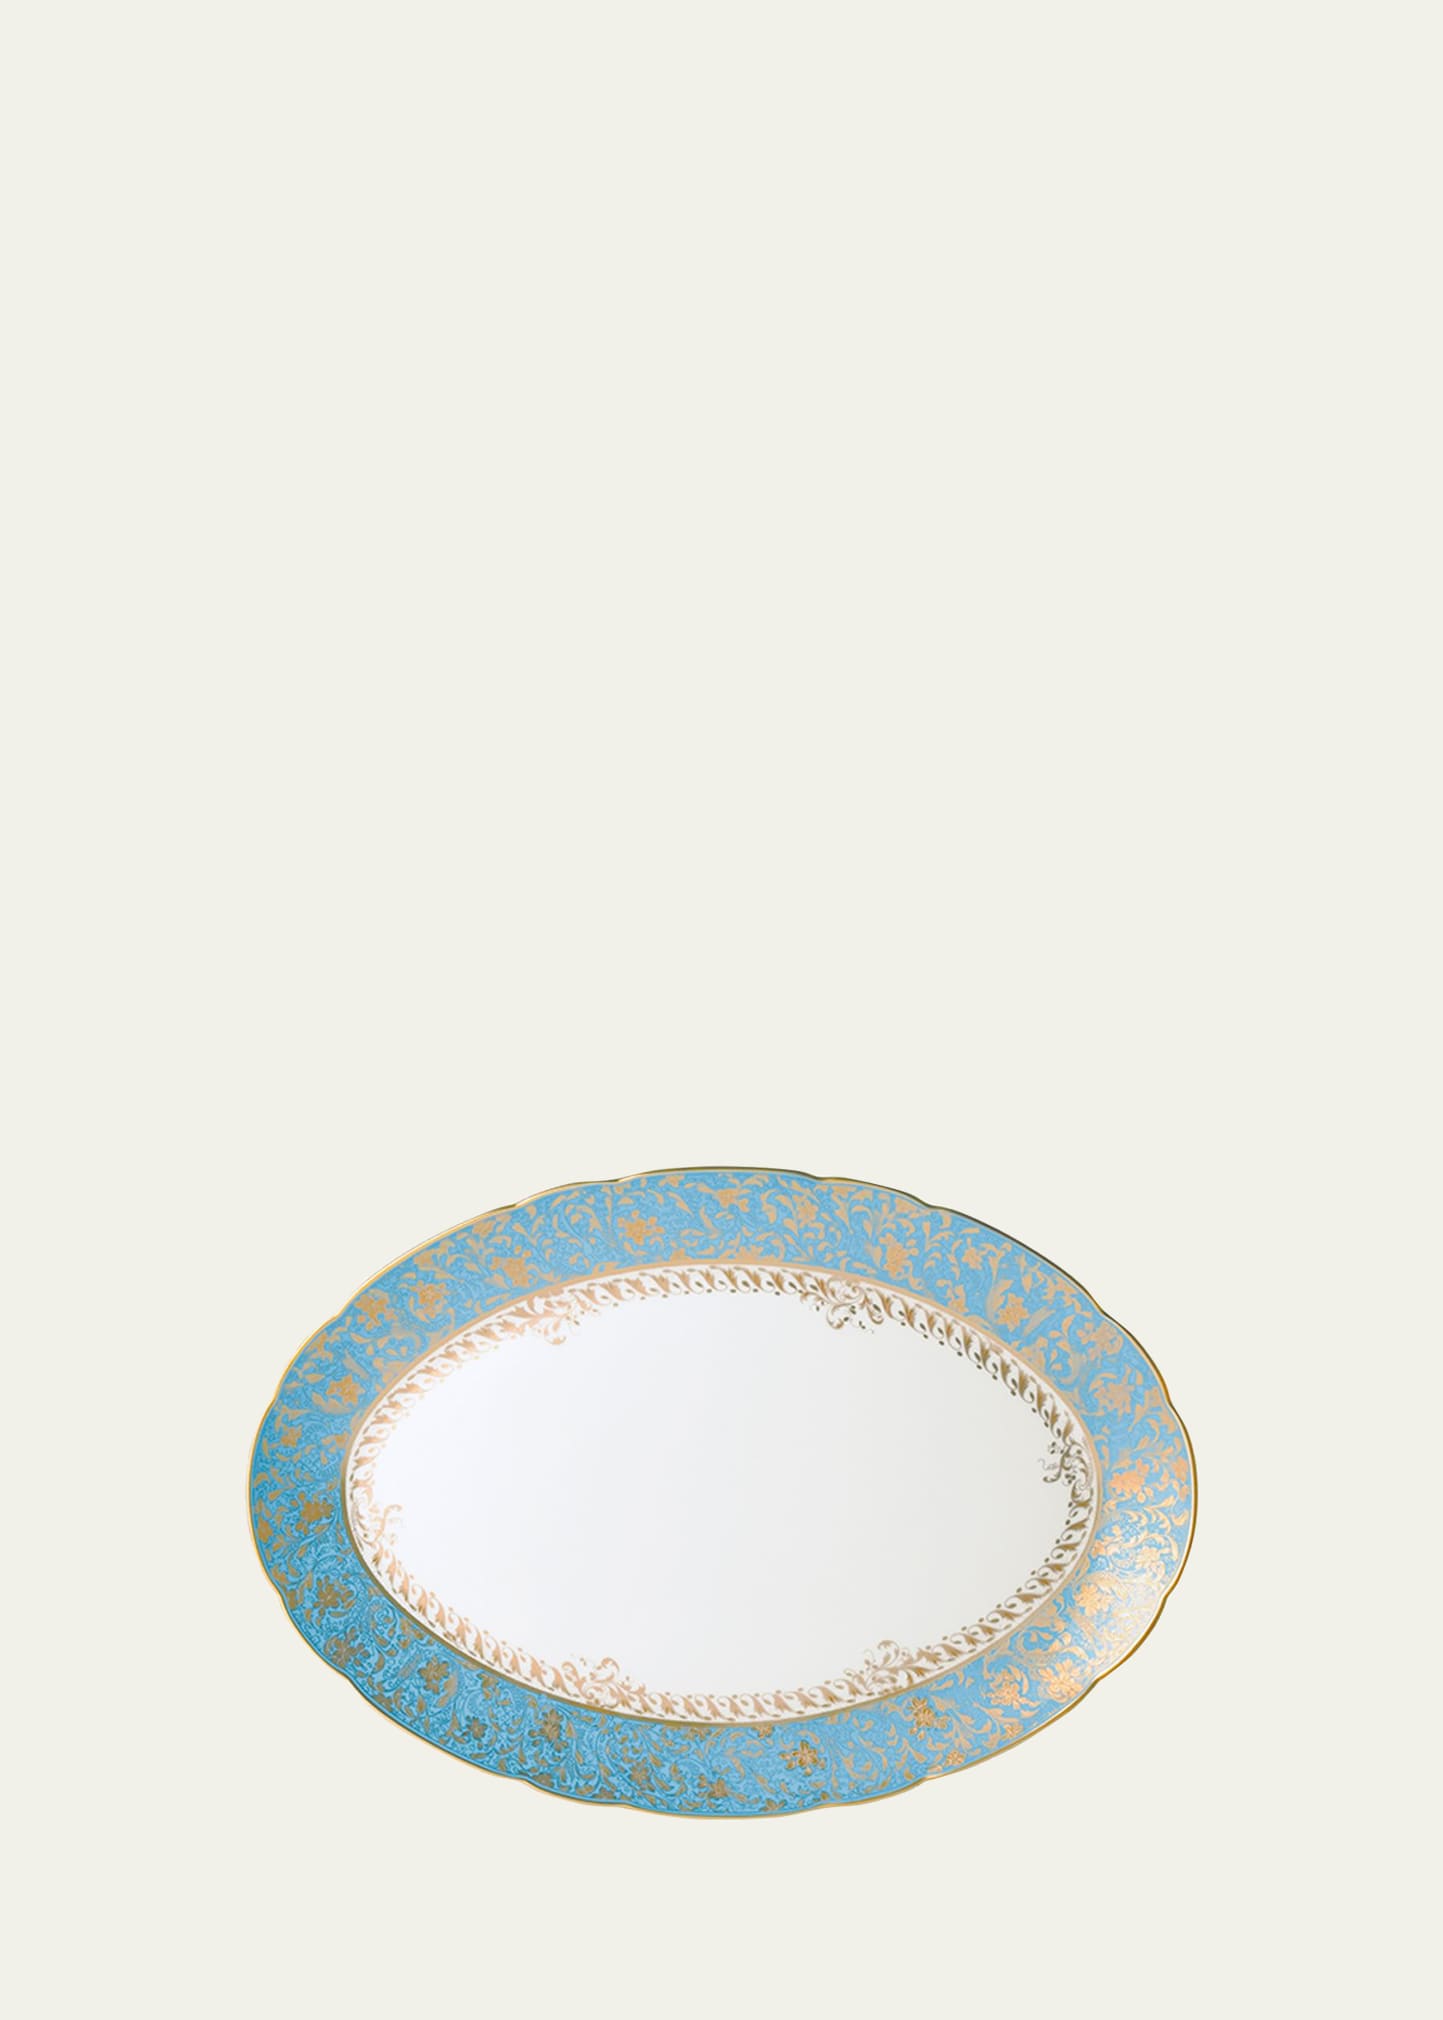 Eden Turquoise Oval Platter, 15"